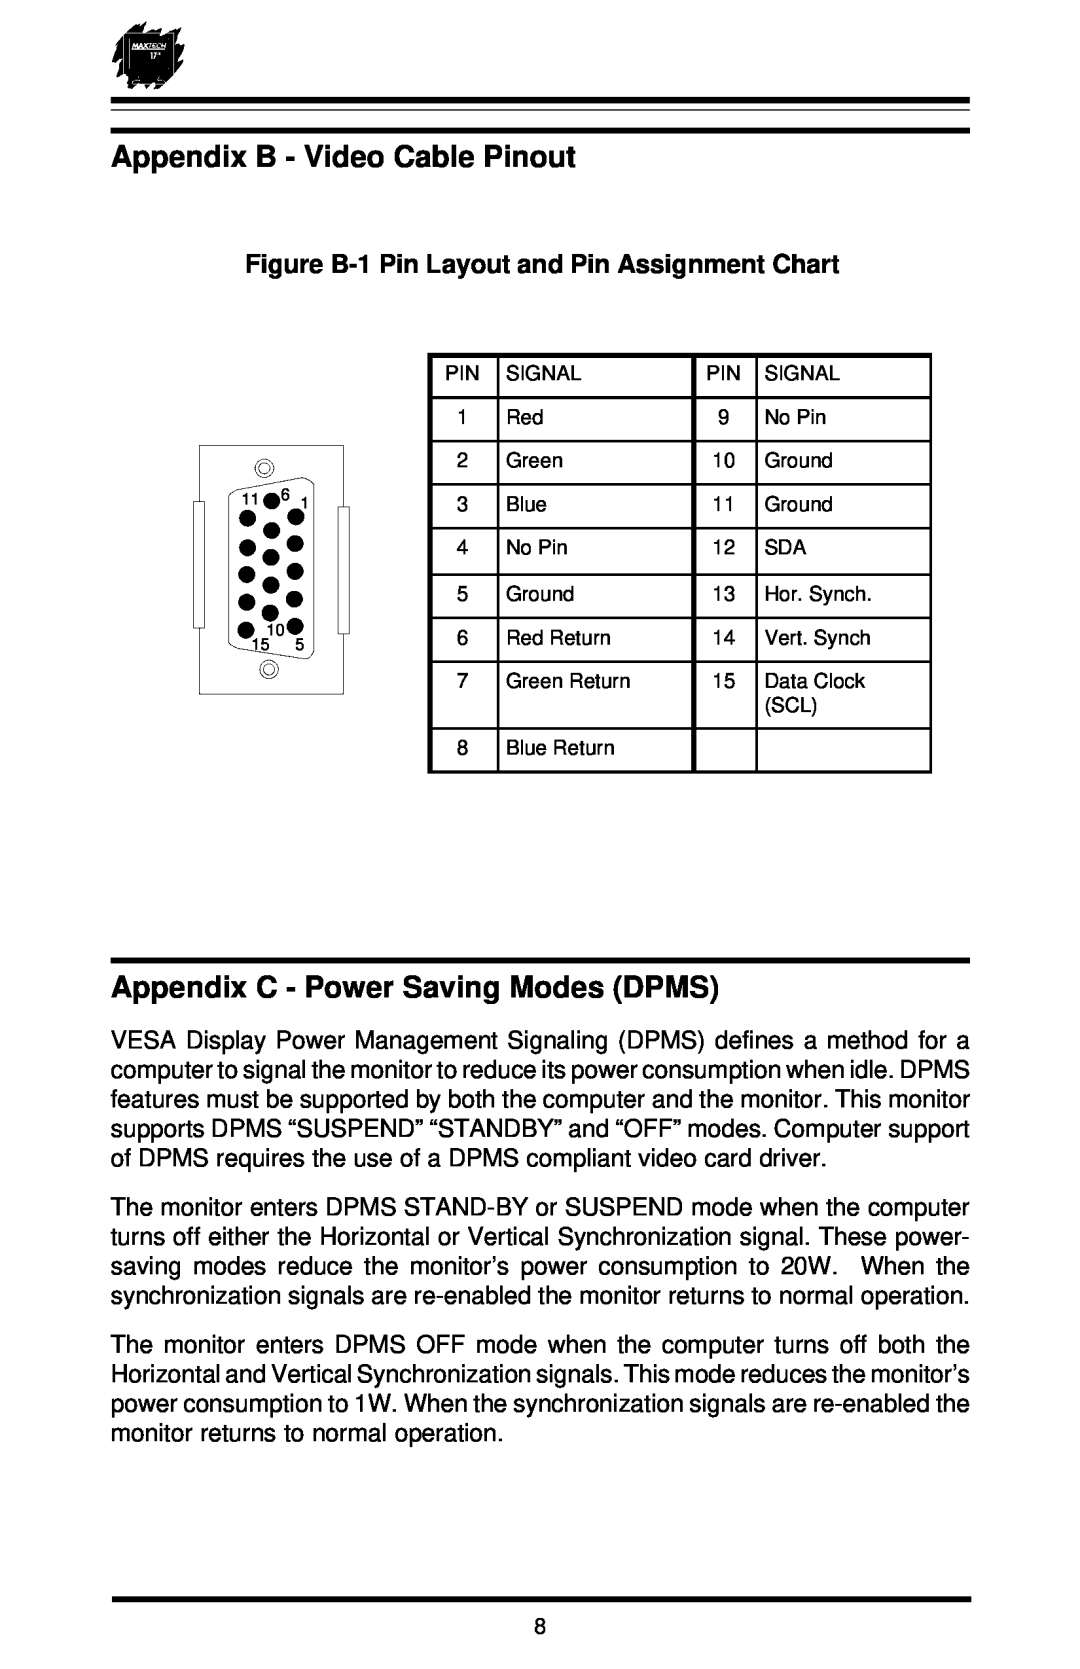 MaxTech XT-7871 user manual Appendix B - Video Cable Pinout, Appendix C - Power Saving Modes DPMS 